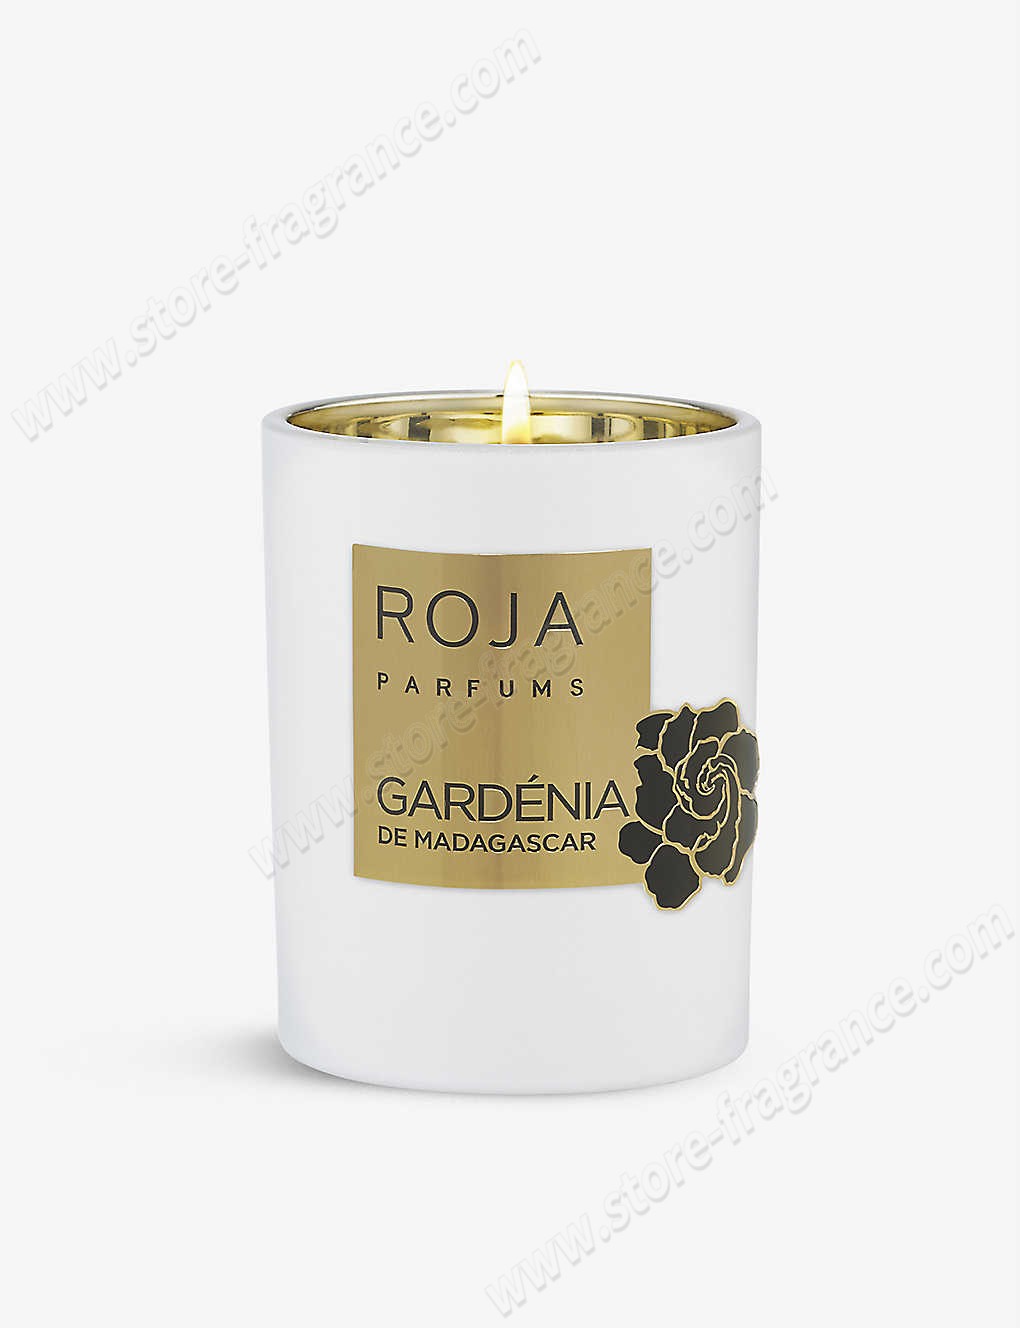 ROJA PARFUMS/Gardénia de Madagascar scented candle 300g ✿ Discount Store - ROJA PARFUMS/Gardénia de Madagascar scented candle 300g ✿ Discount Store